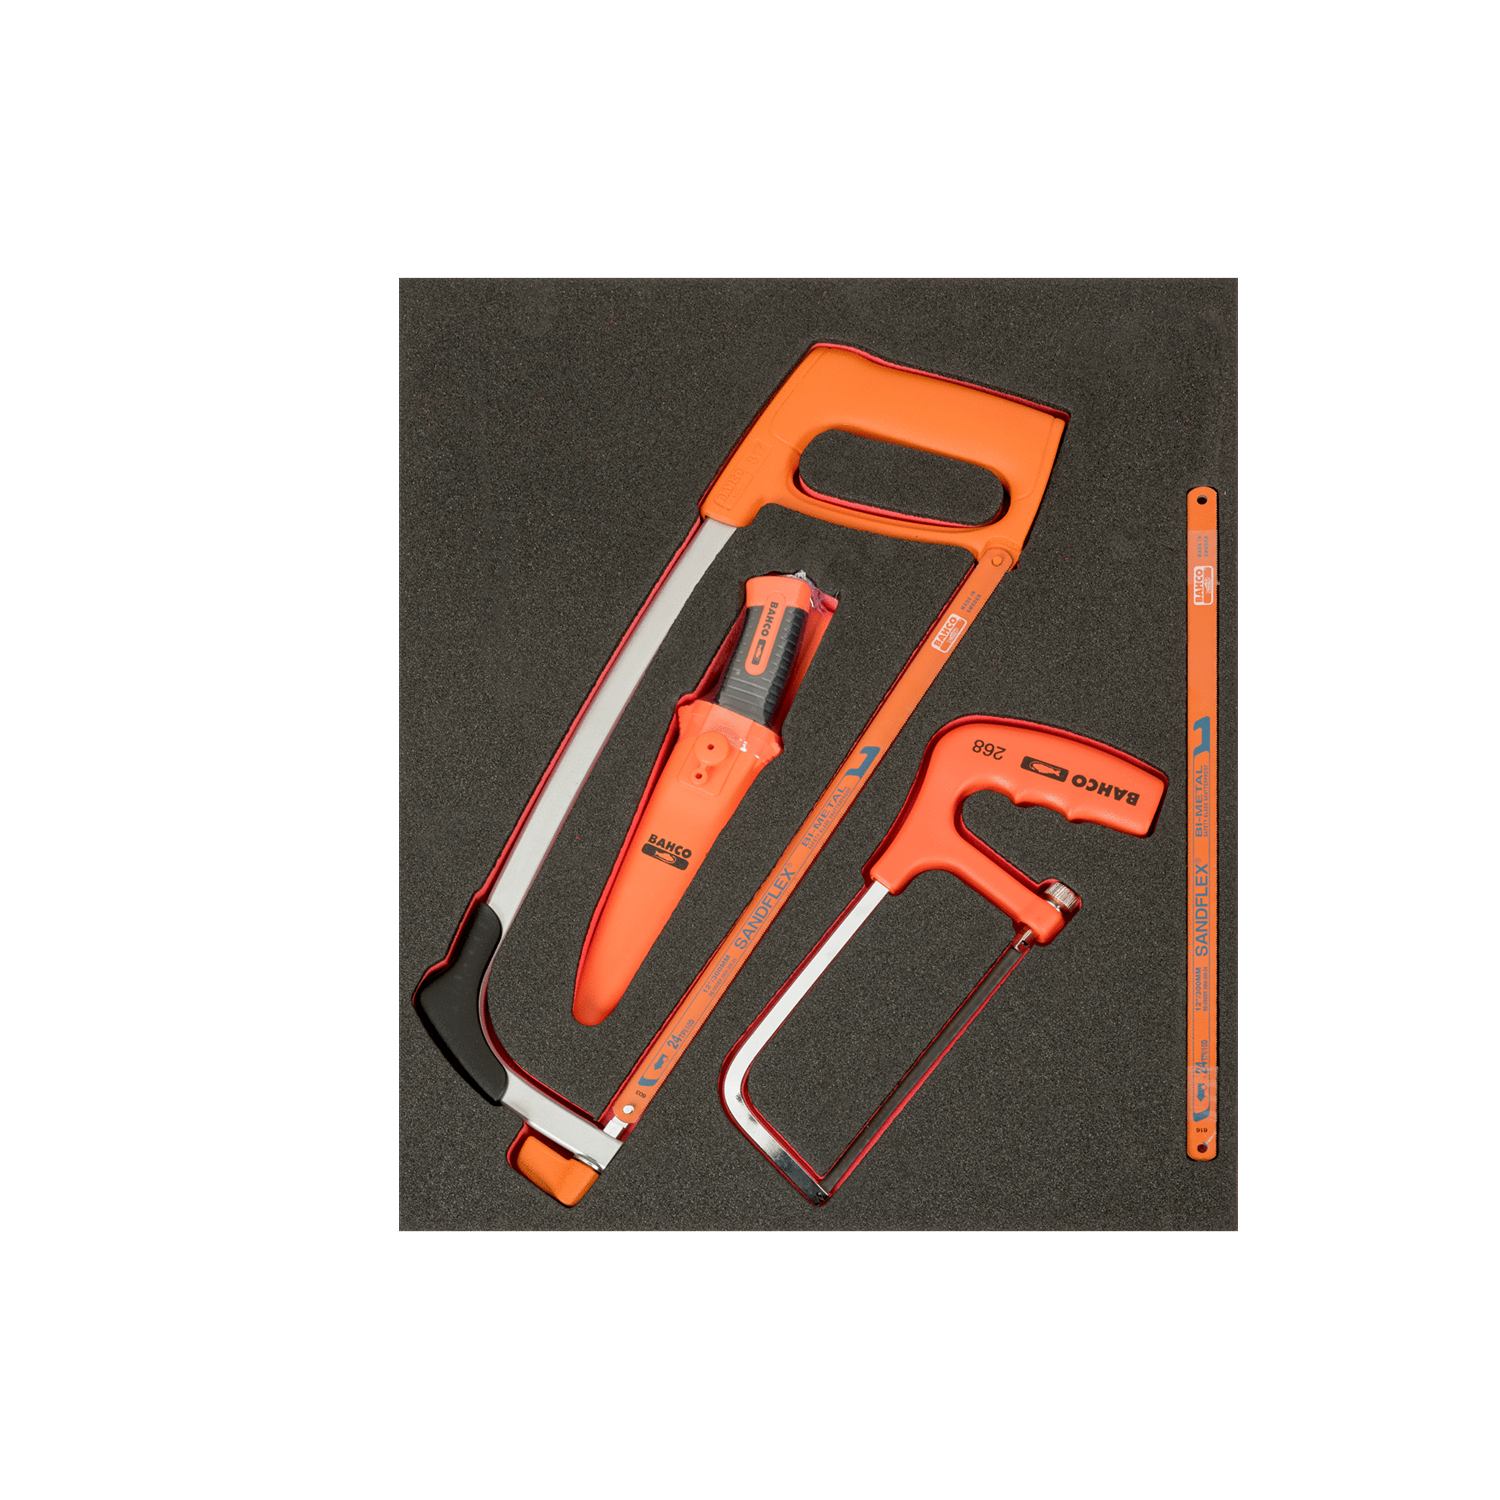 BAHCO FF1F5005 Fit&Go 2/3 Foam Inlay Cutting Tool Set - 8 Pcs - Premium Cutting Tool Set from BAHCO - Shop now at Yew Aik.